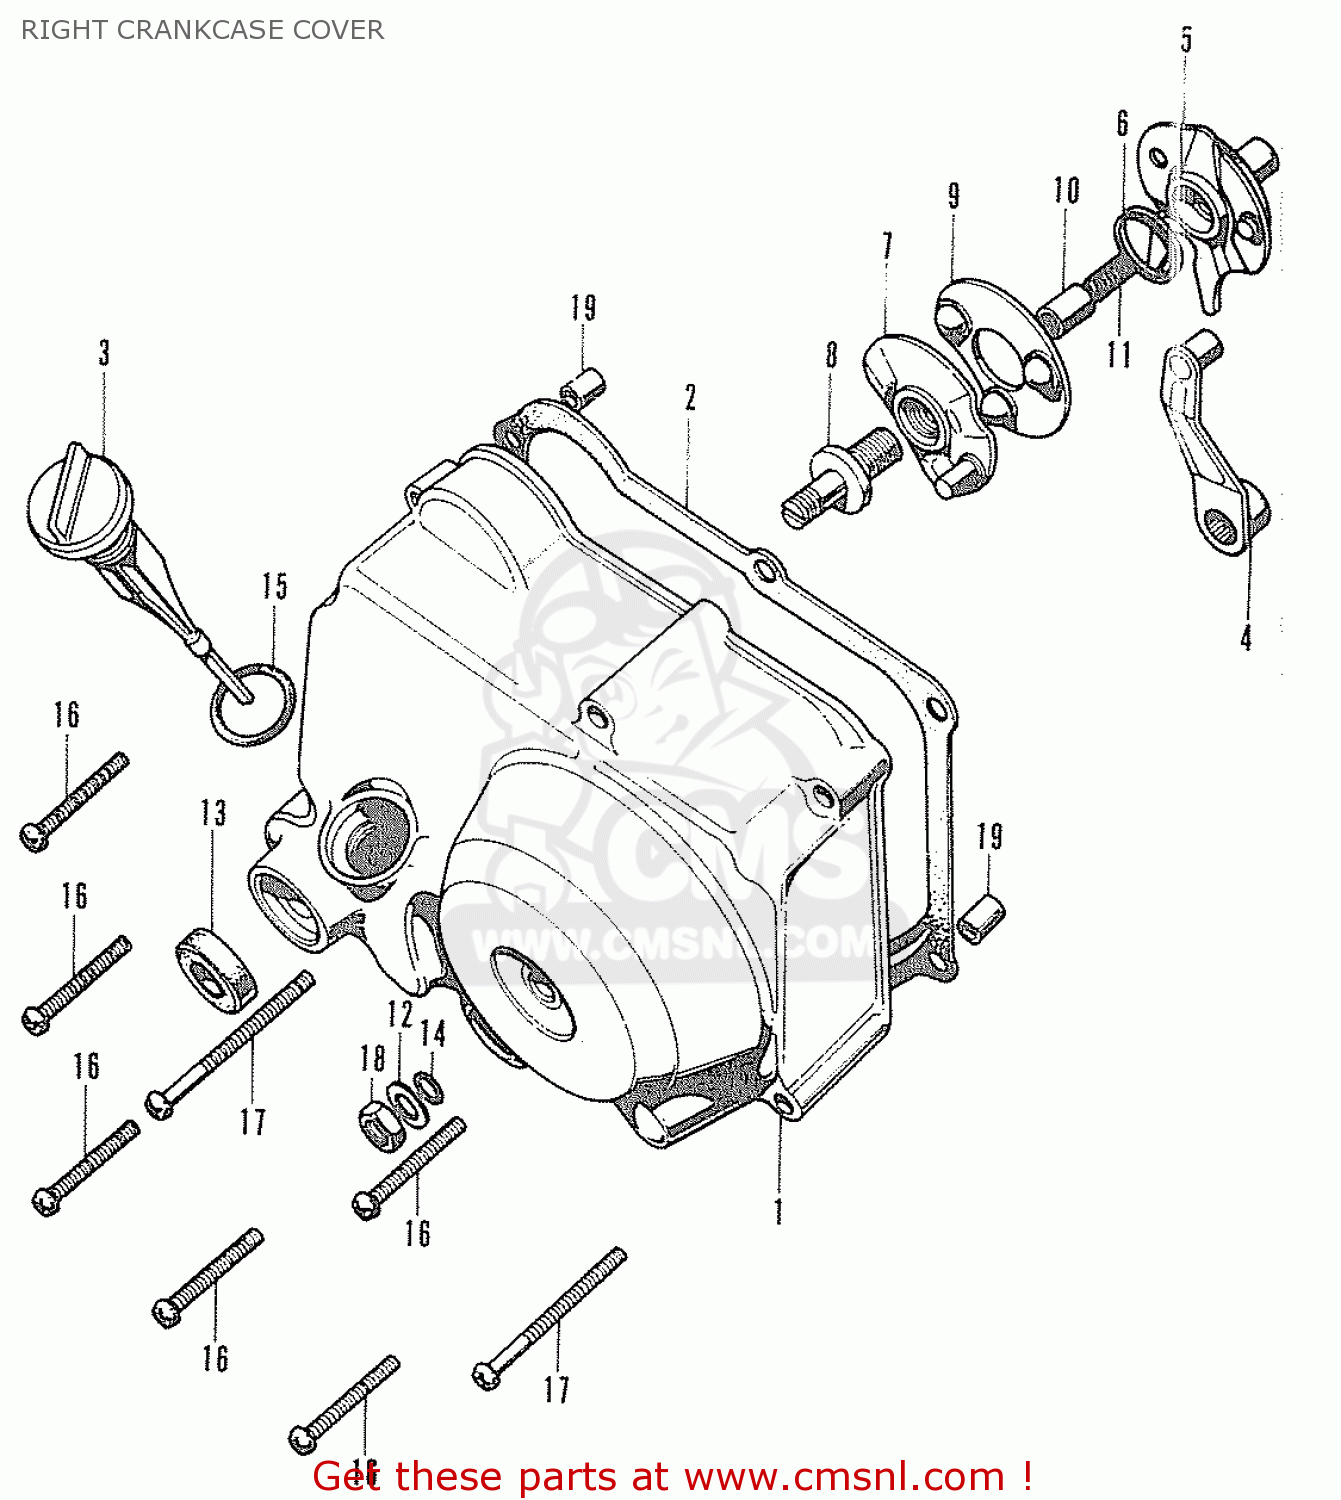 Honda chally parts #5